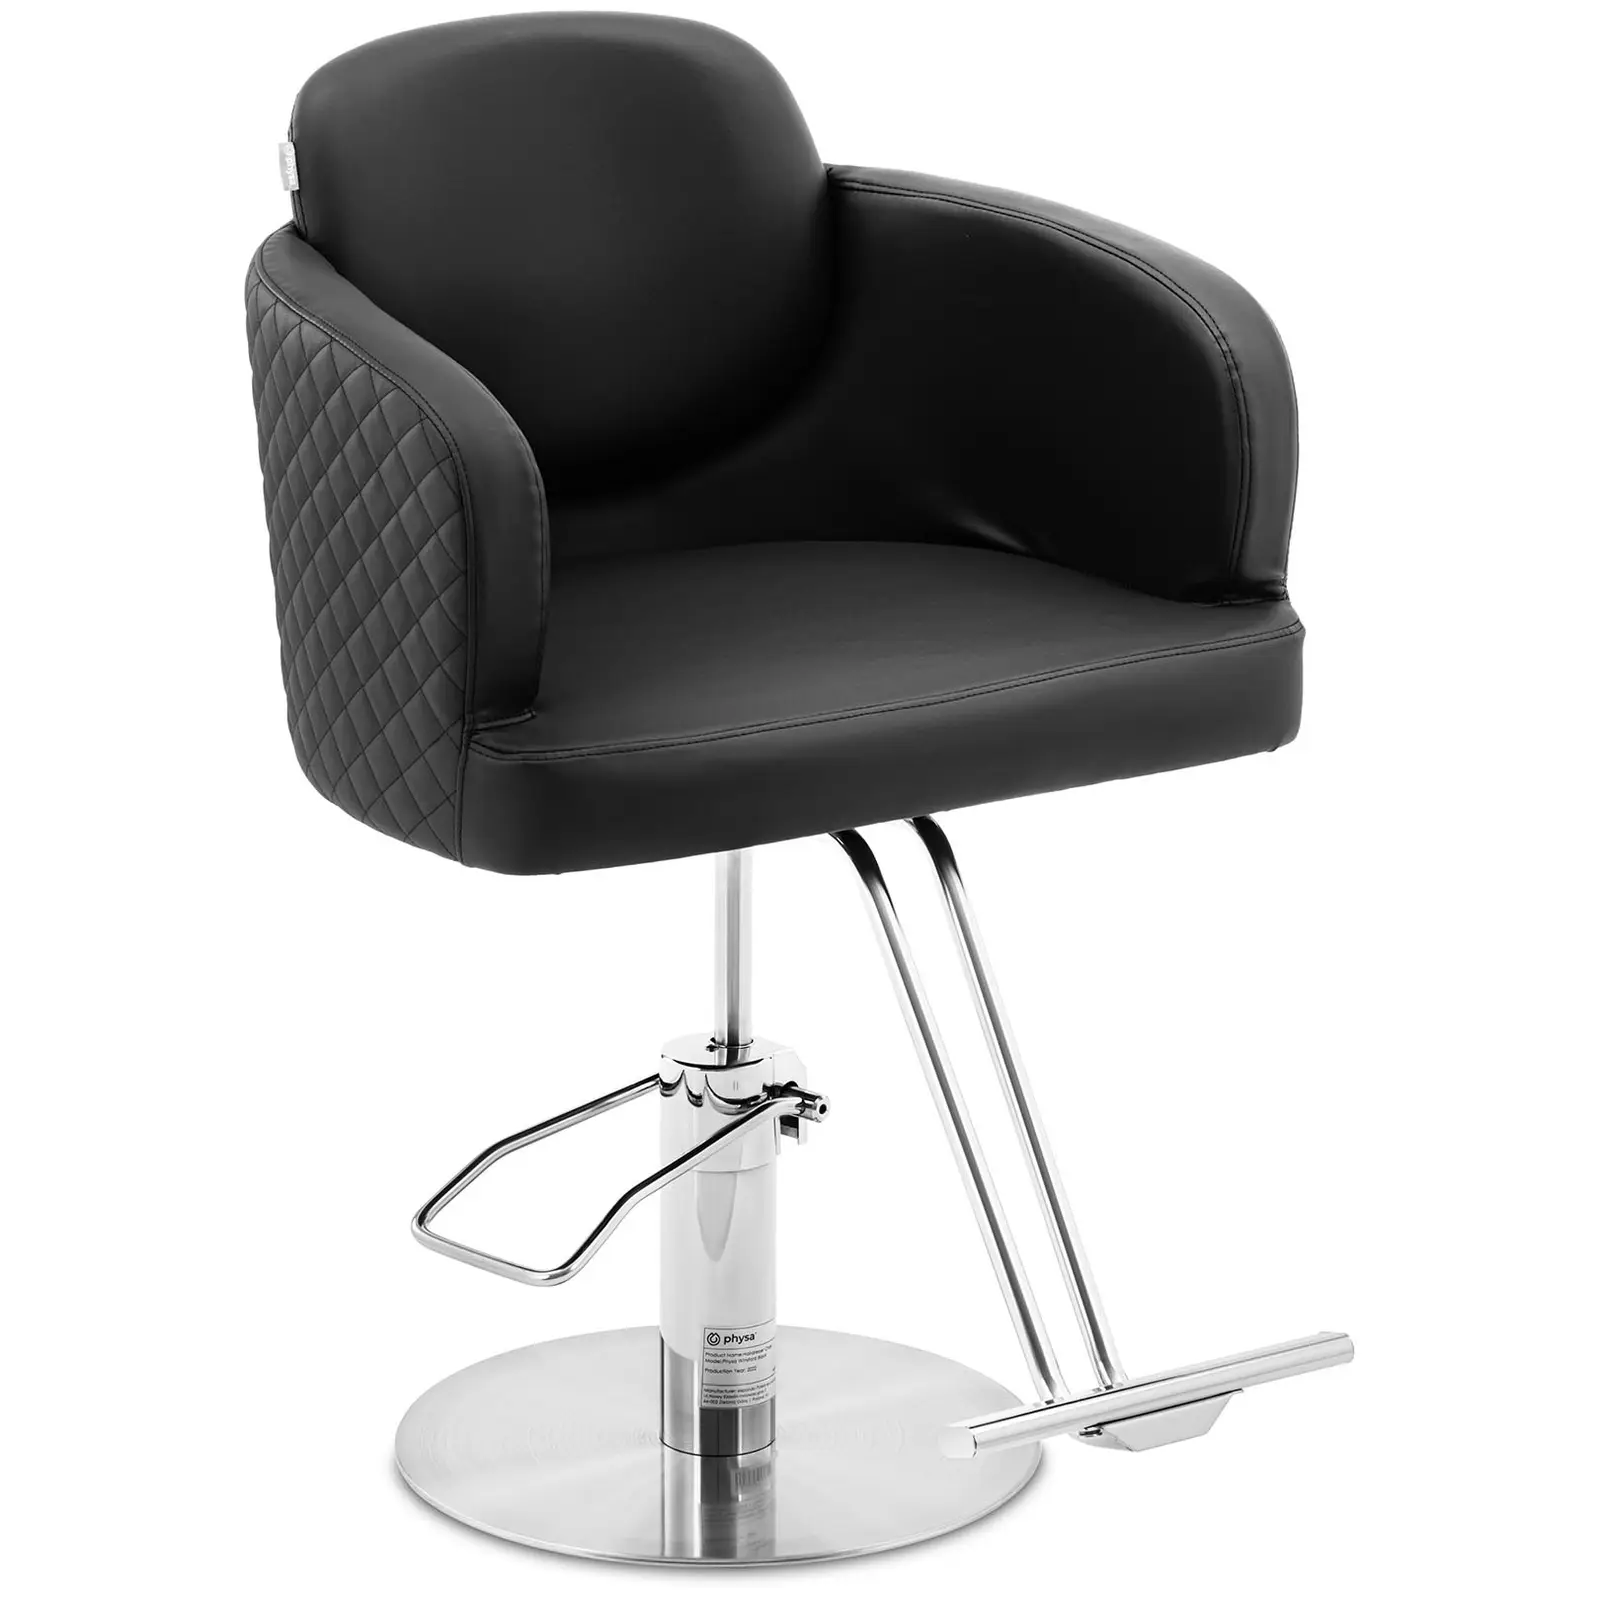 Cadeira de cabeleireiro com apoio para os pés - 870-1020 mm - 200 kg - Preto, Prata